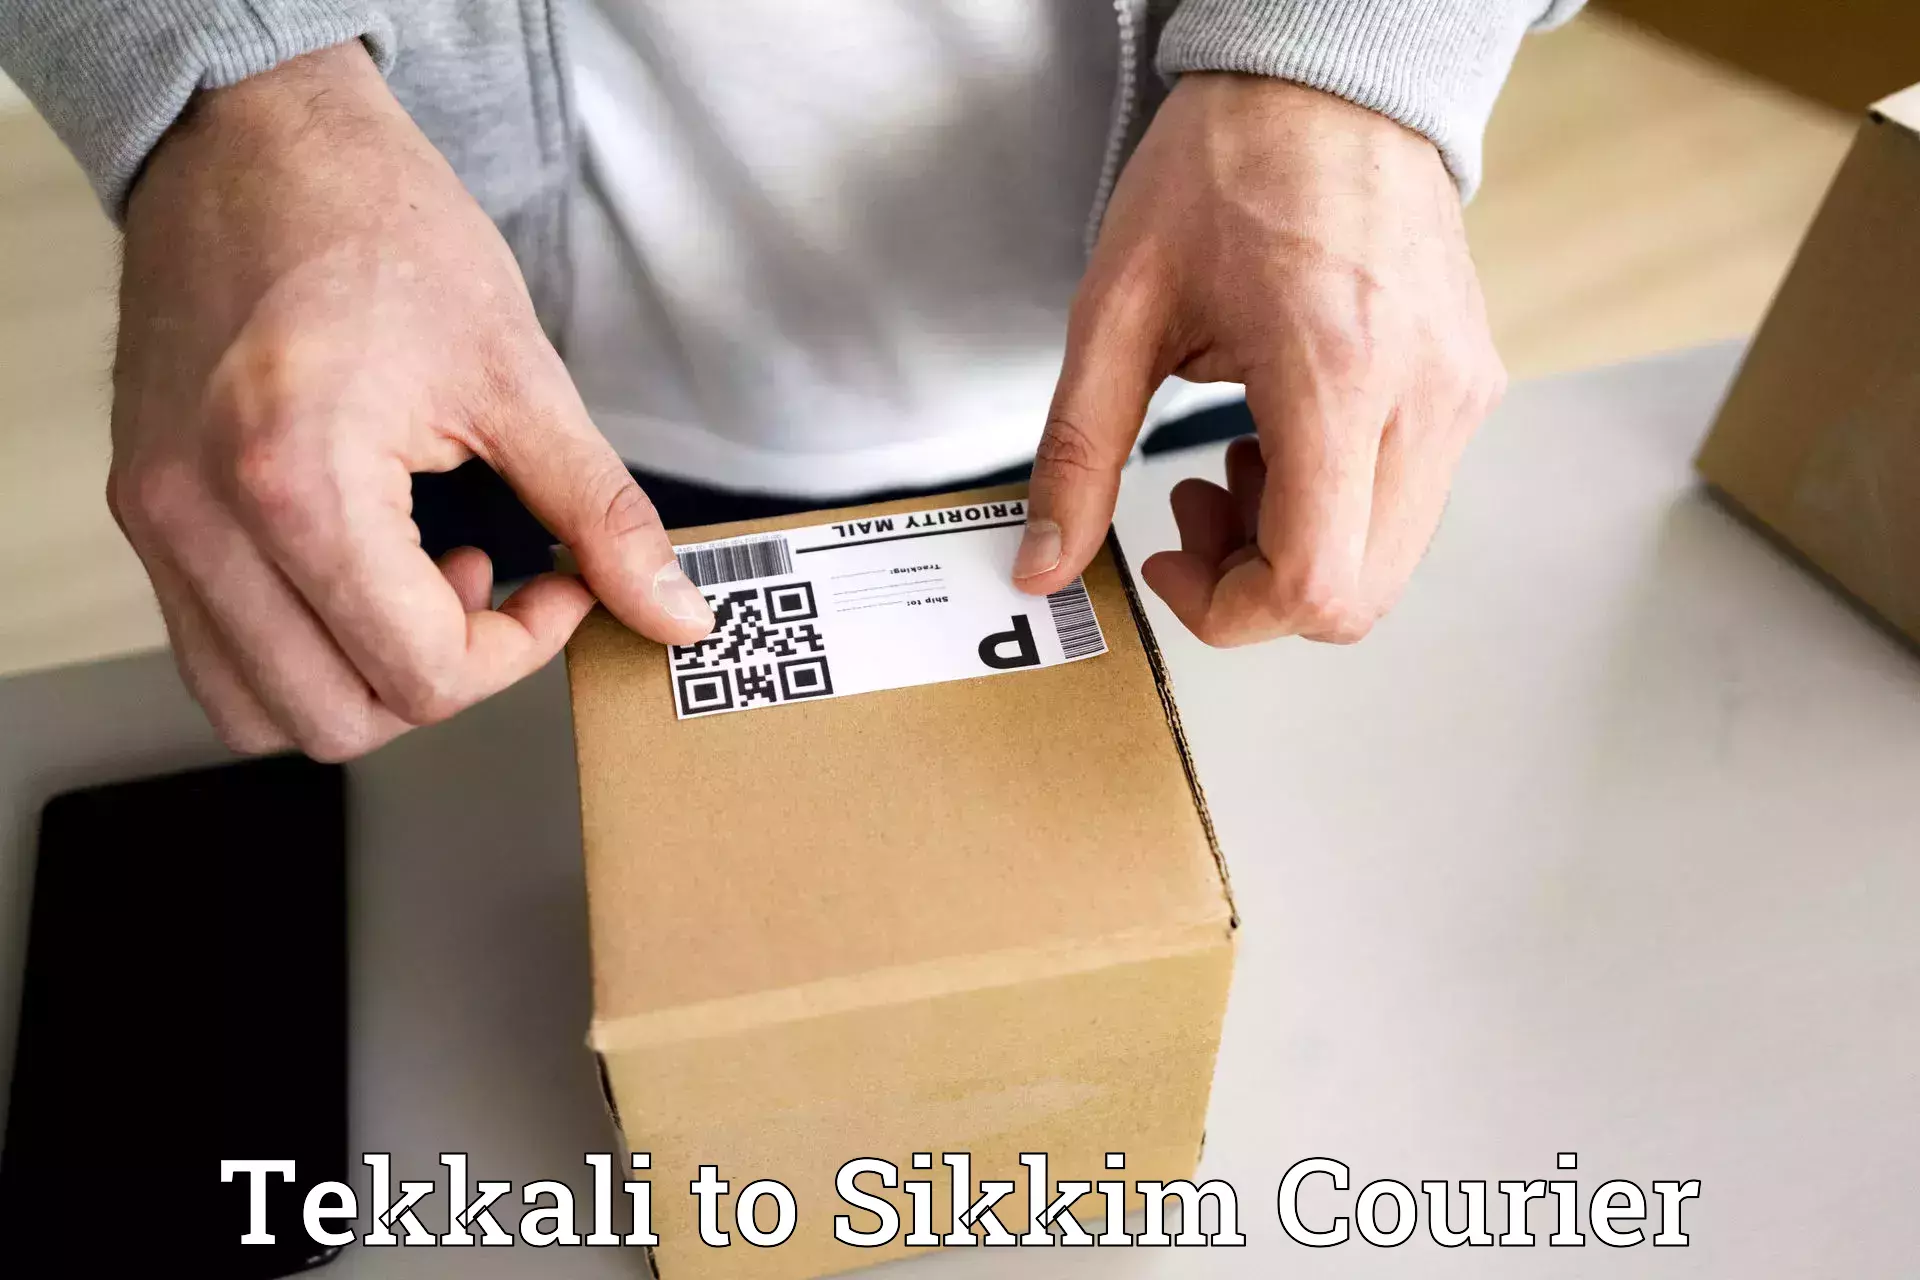 Individual parcel service Tekkali to Geyzing